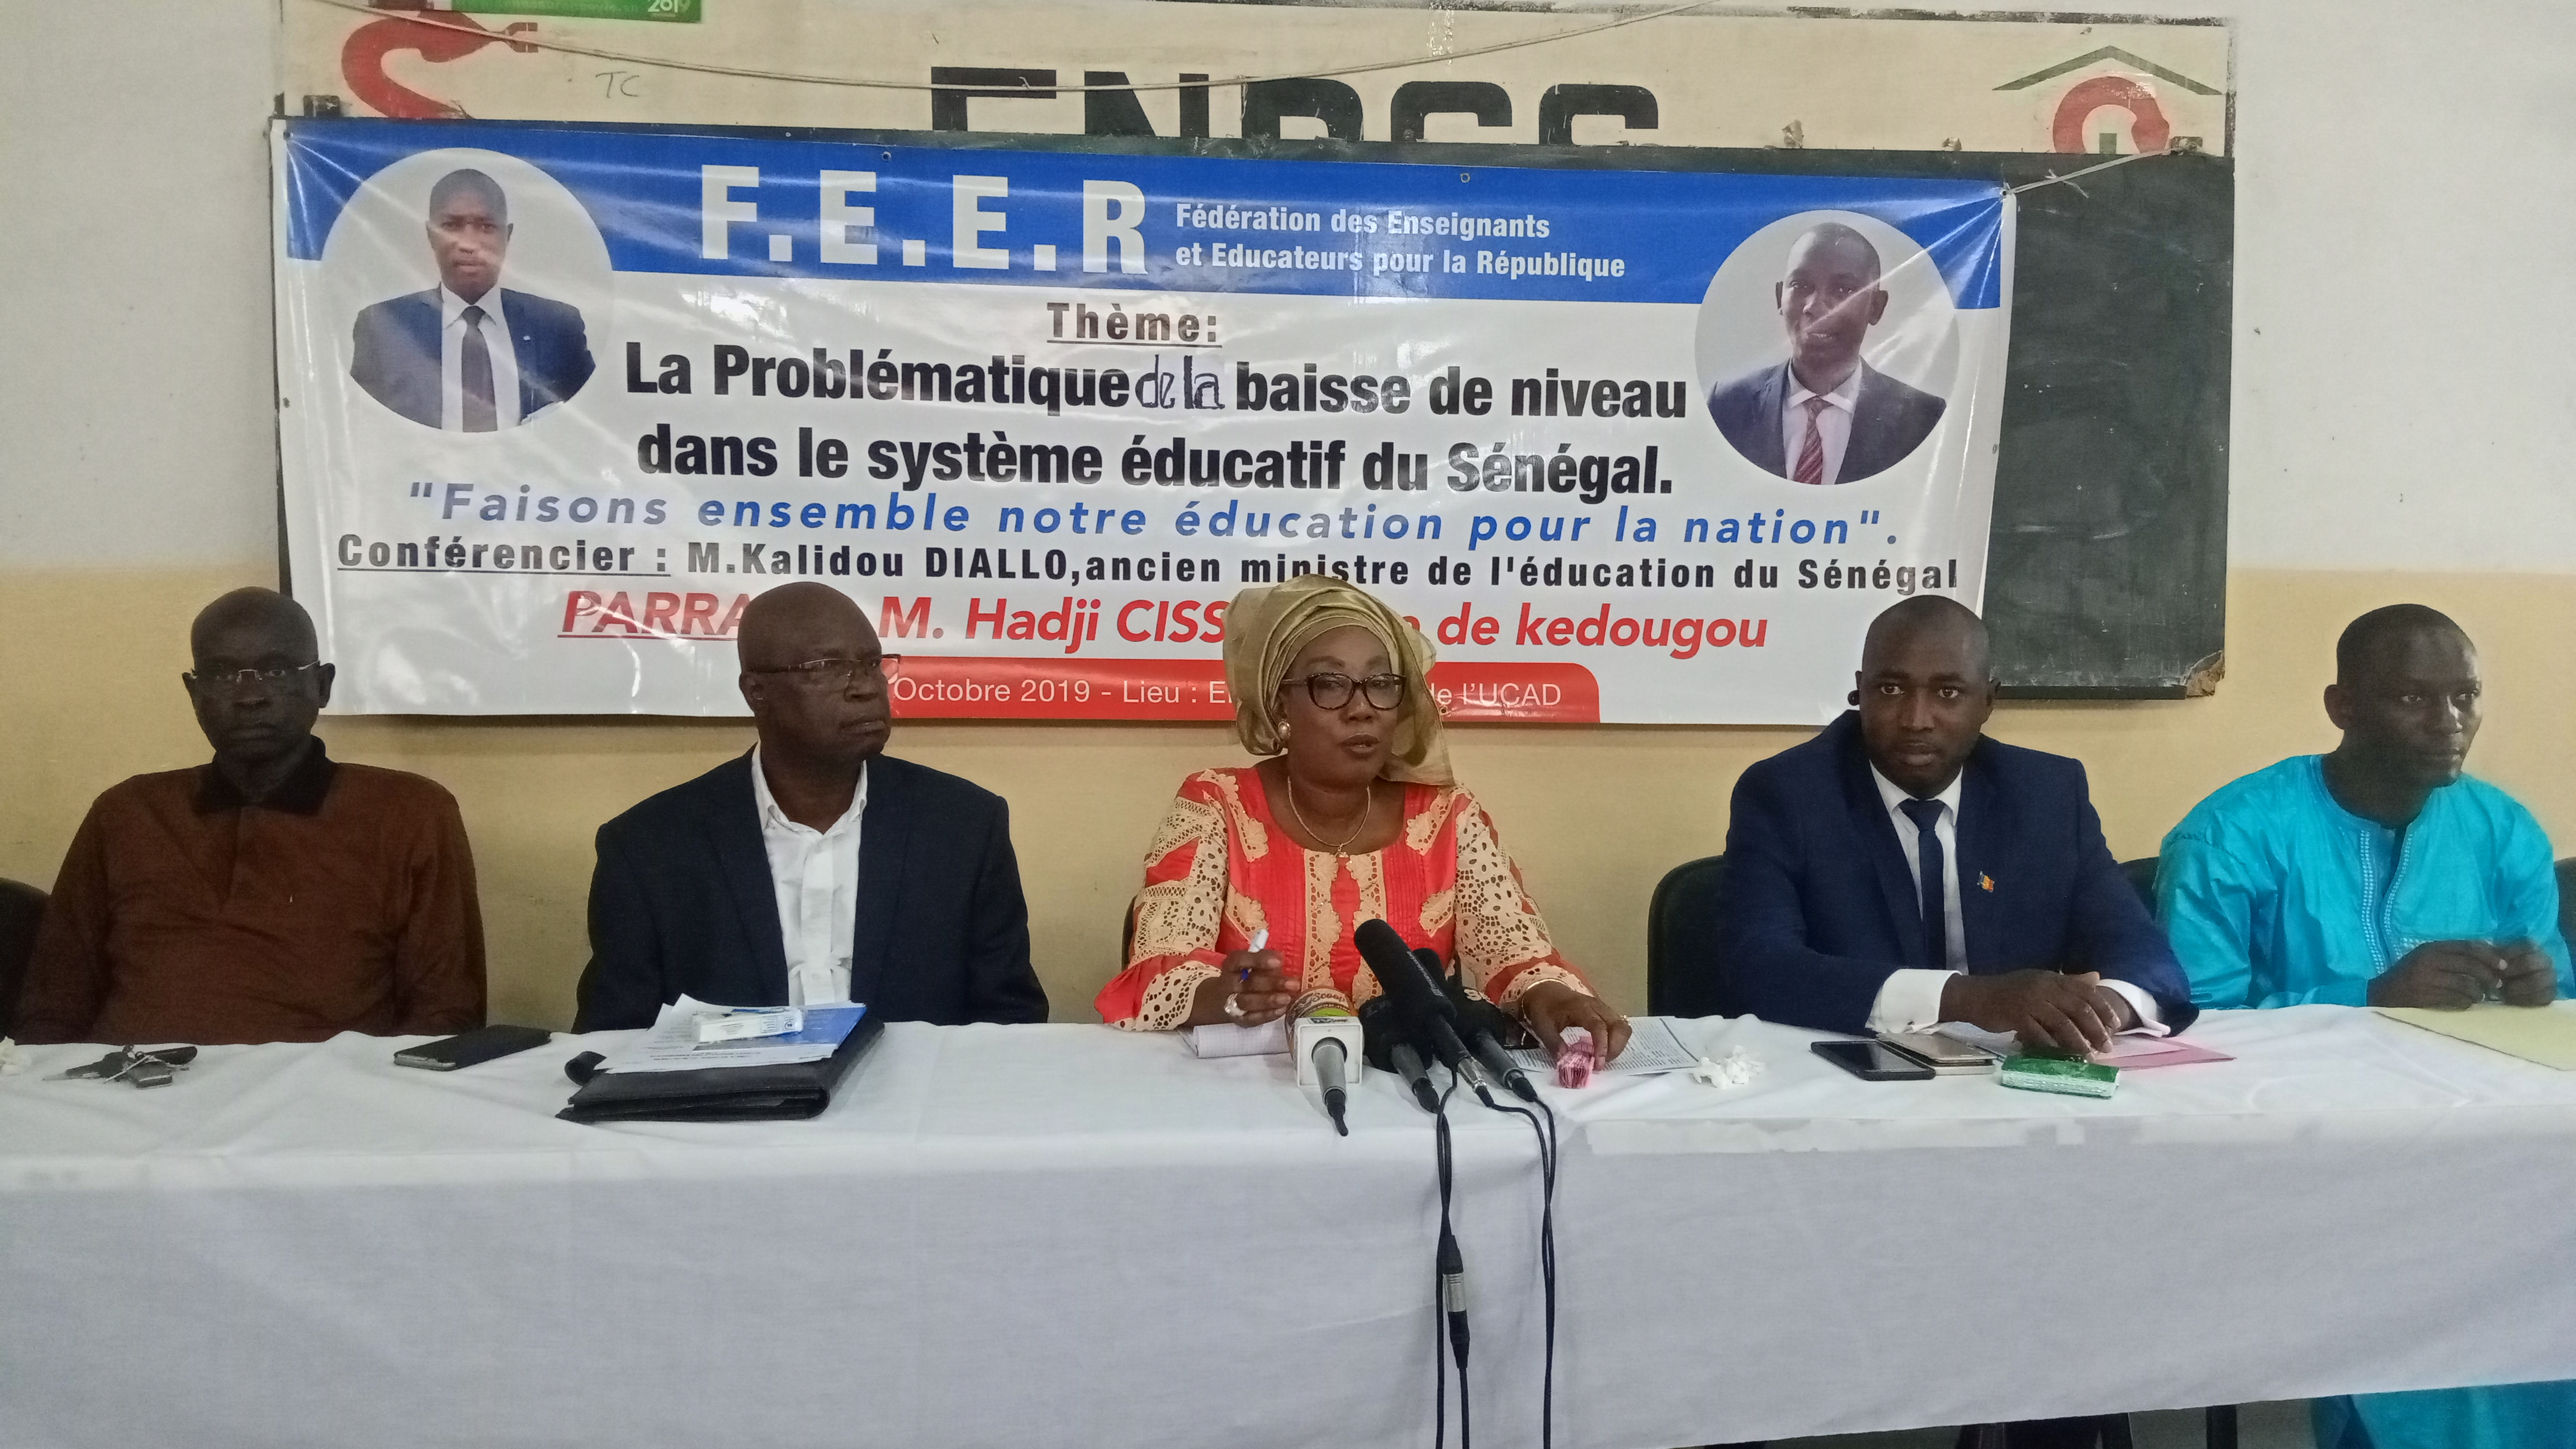 Problématique de la baisse de niveau du  système éducatif au Sénégal : Les enseignants et éducateurs de la République posent le débat.